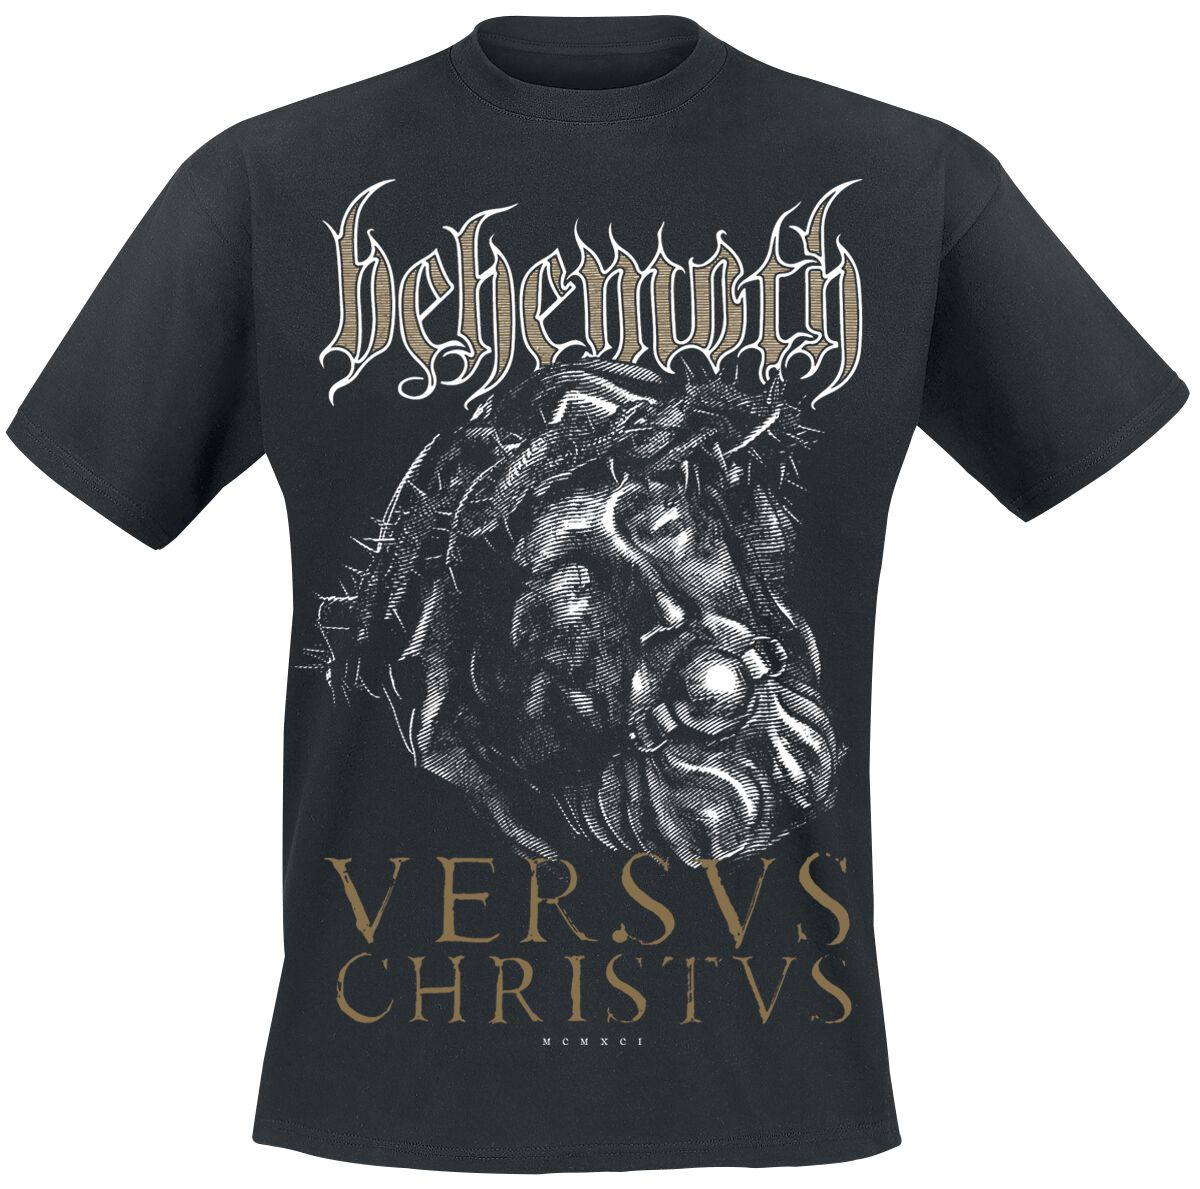 Behemoth T-Shirt - Versvs Christvs - S bis 4XL - für Männer - Größe L - schwarz  - Lizenziertes Merchandise!